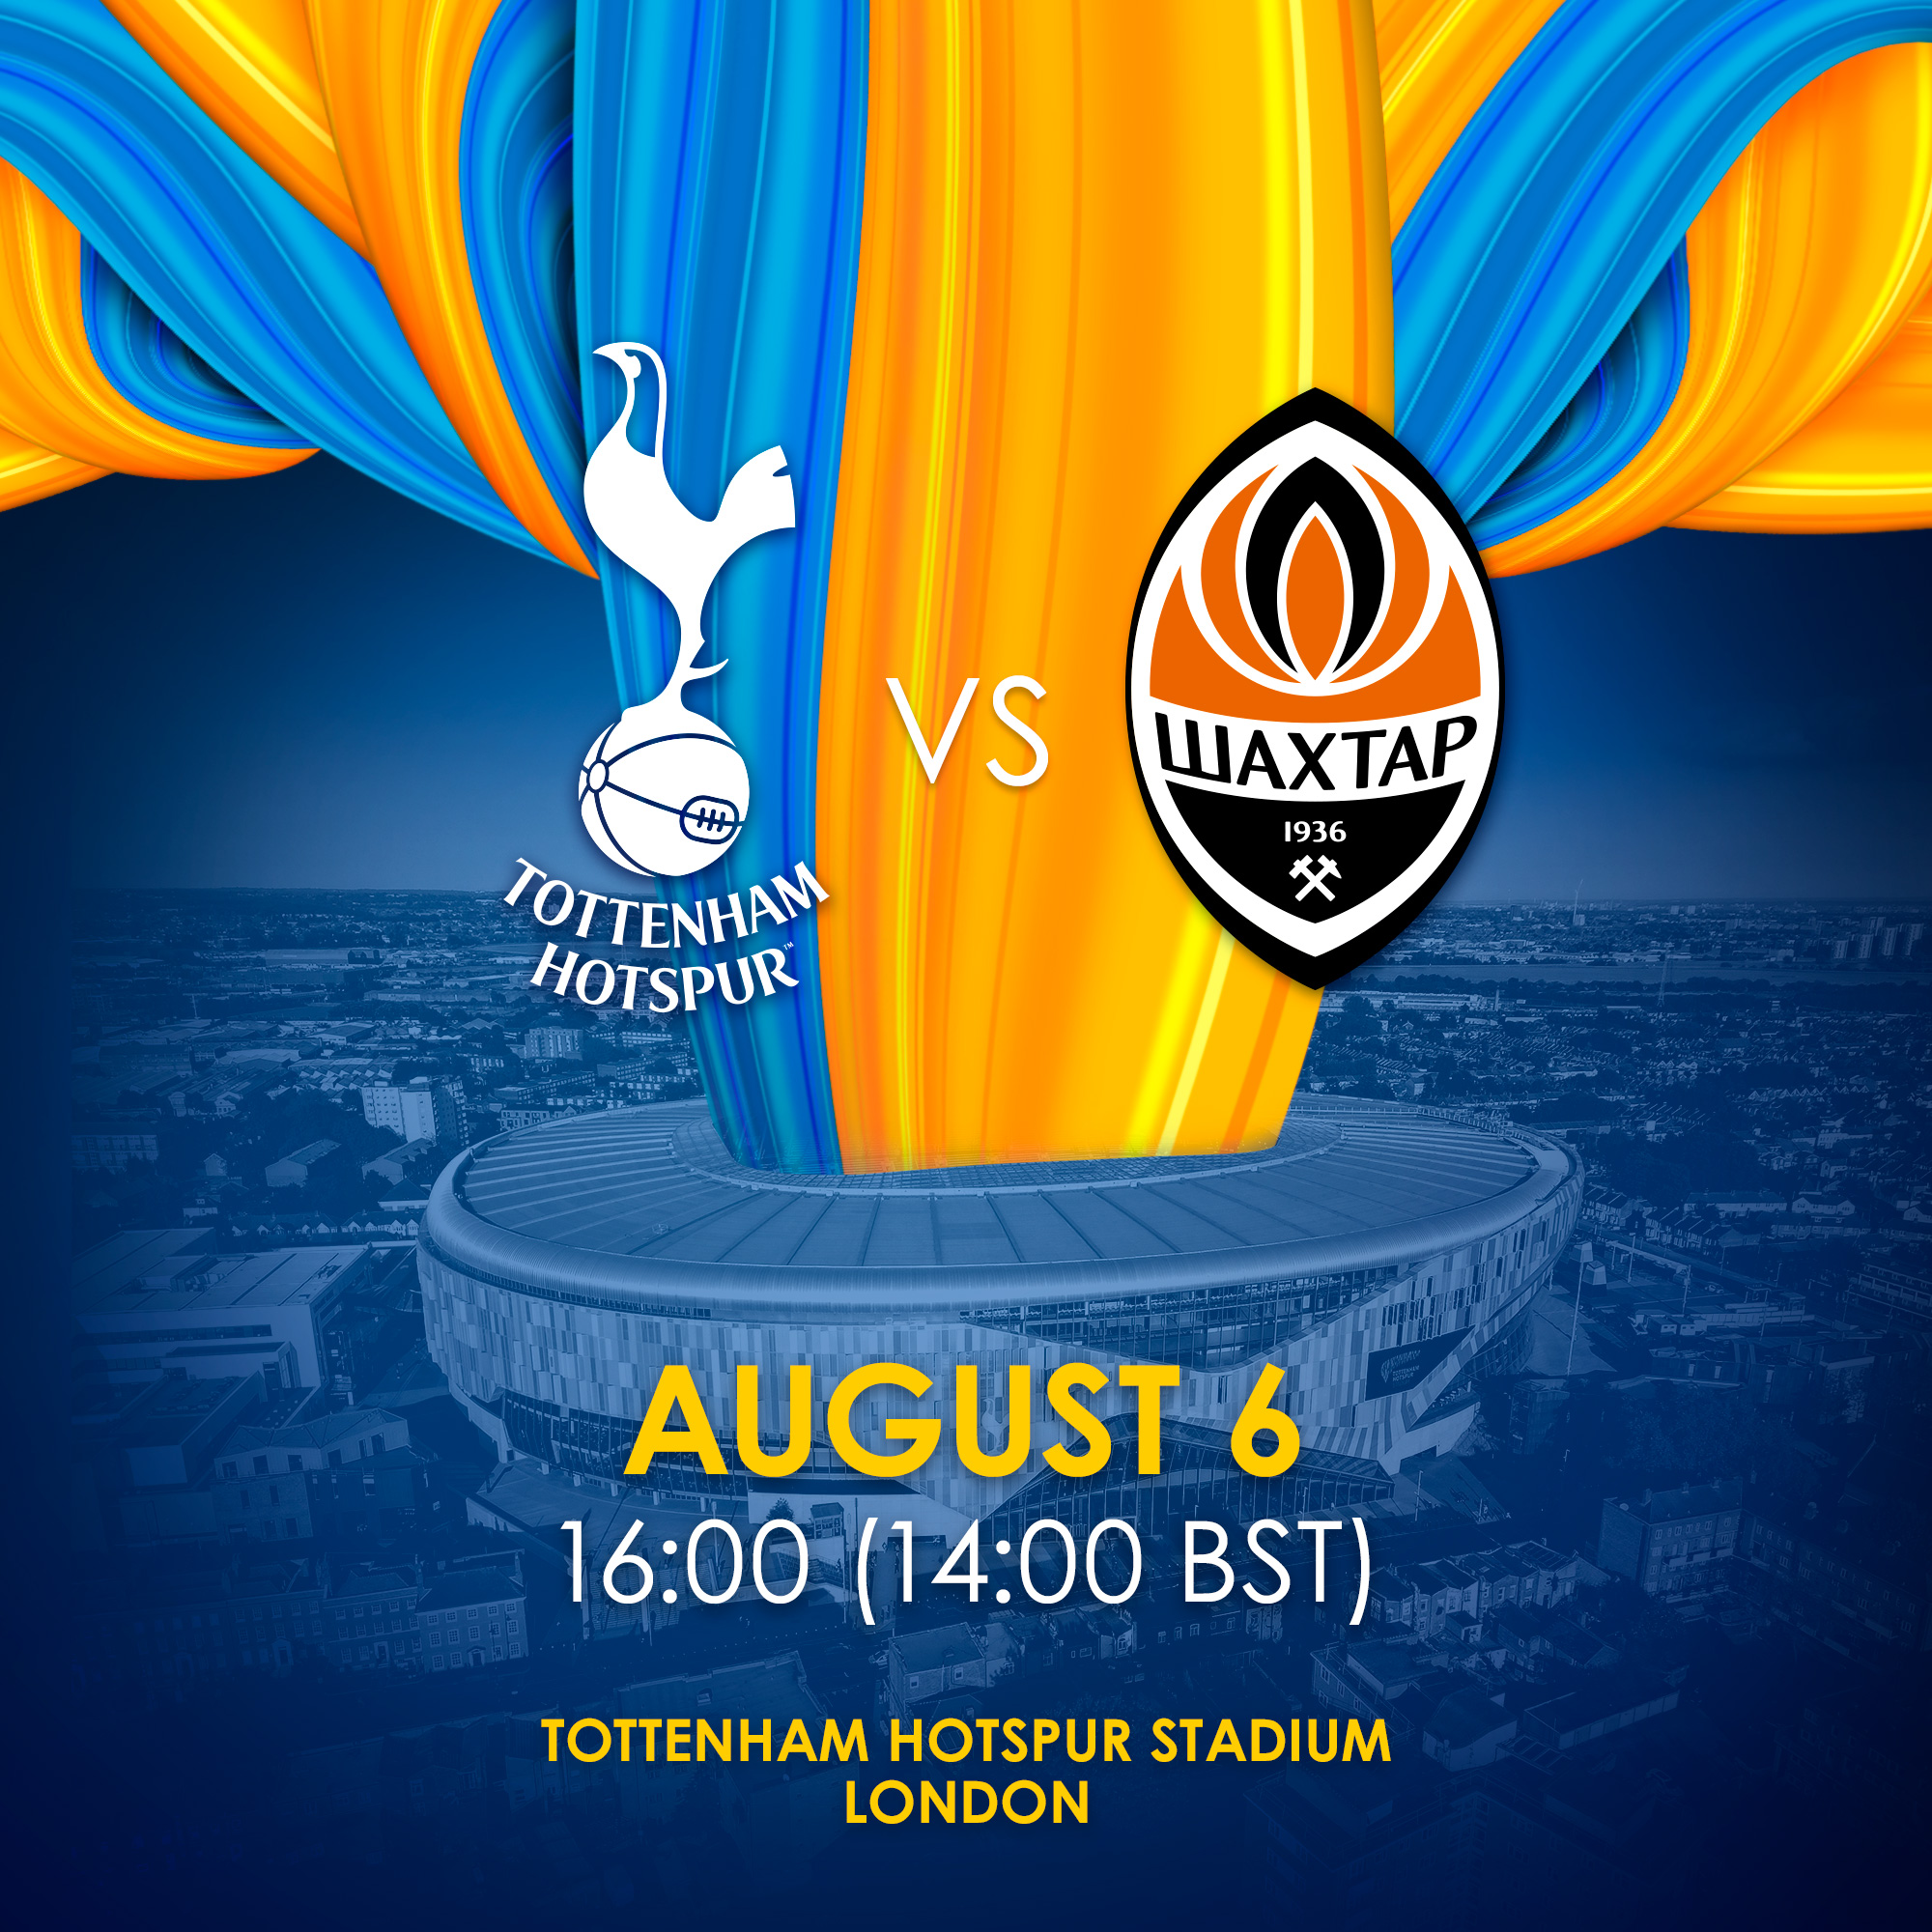 Tottenham Hotspur FC vs FC Shakhtar Donetsk Palpites em hoje 6